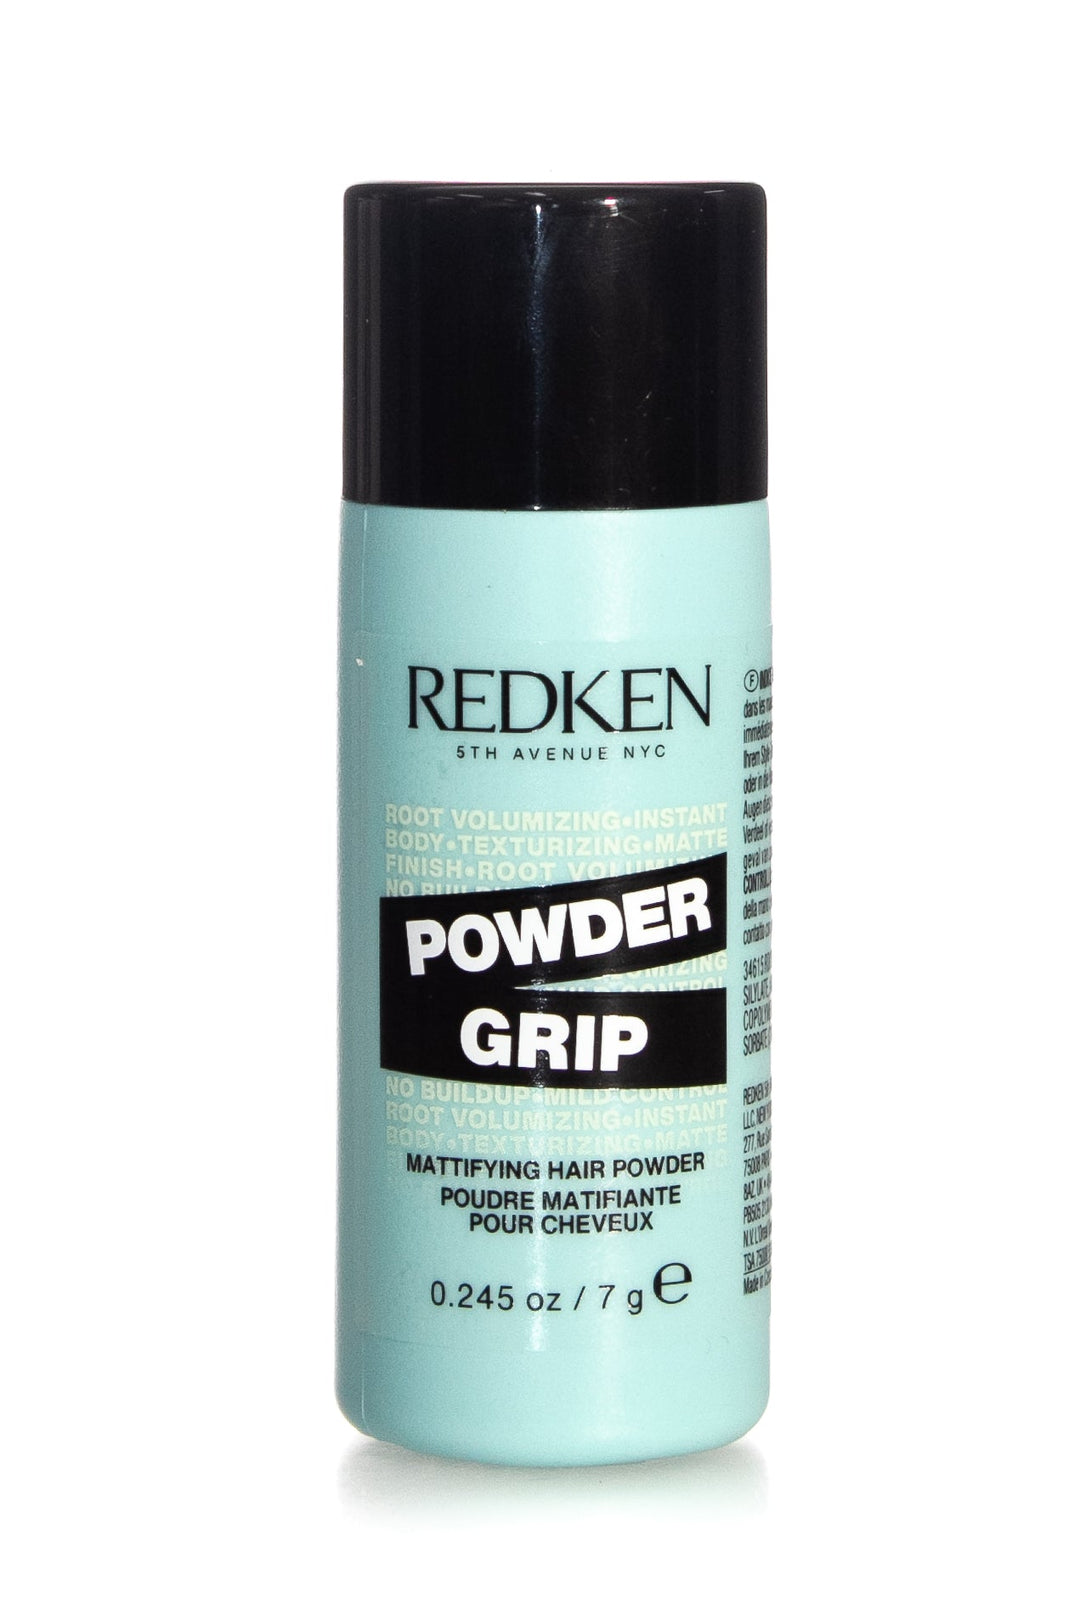 REDKEN Powder Grip Mattifying Hair Powder | 7g